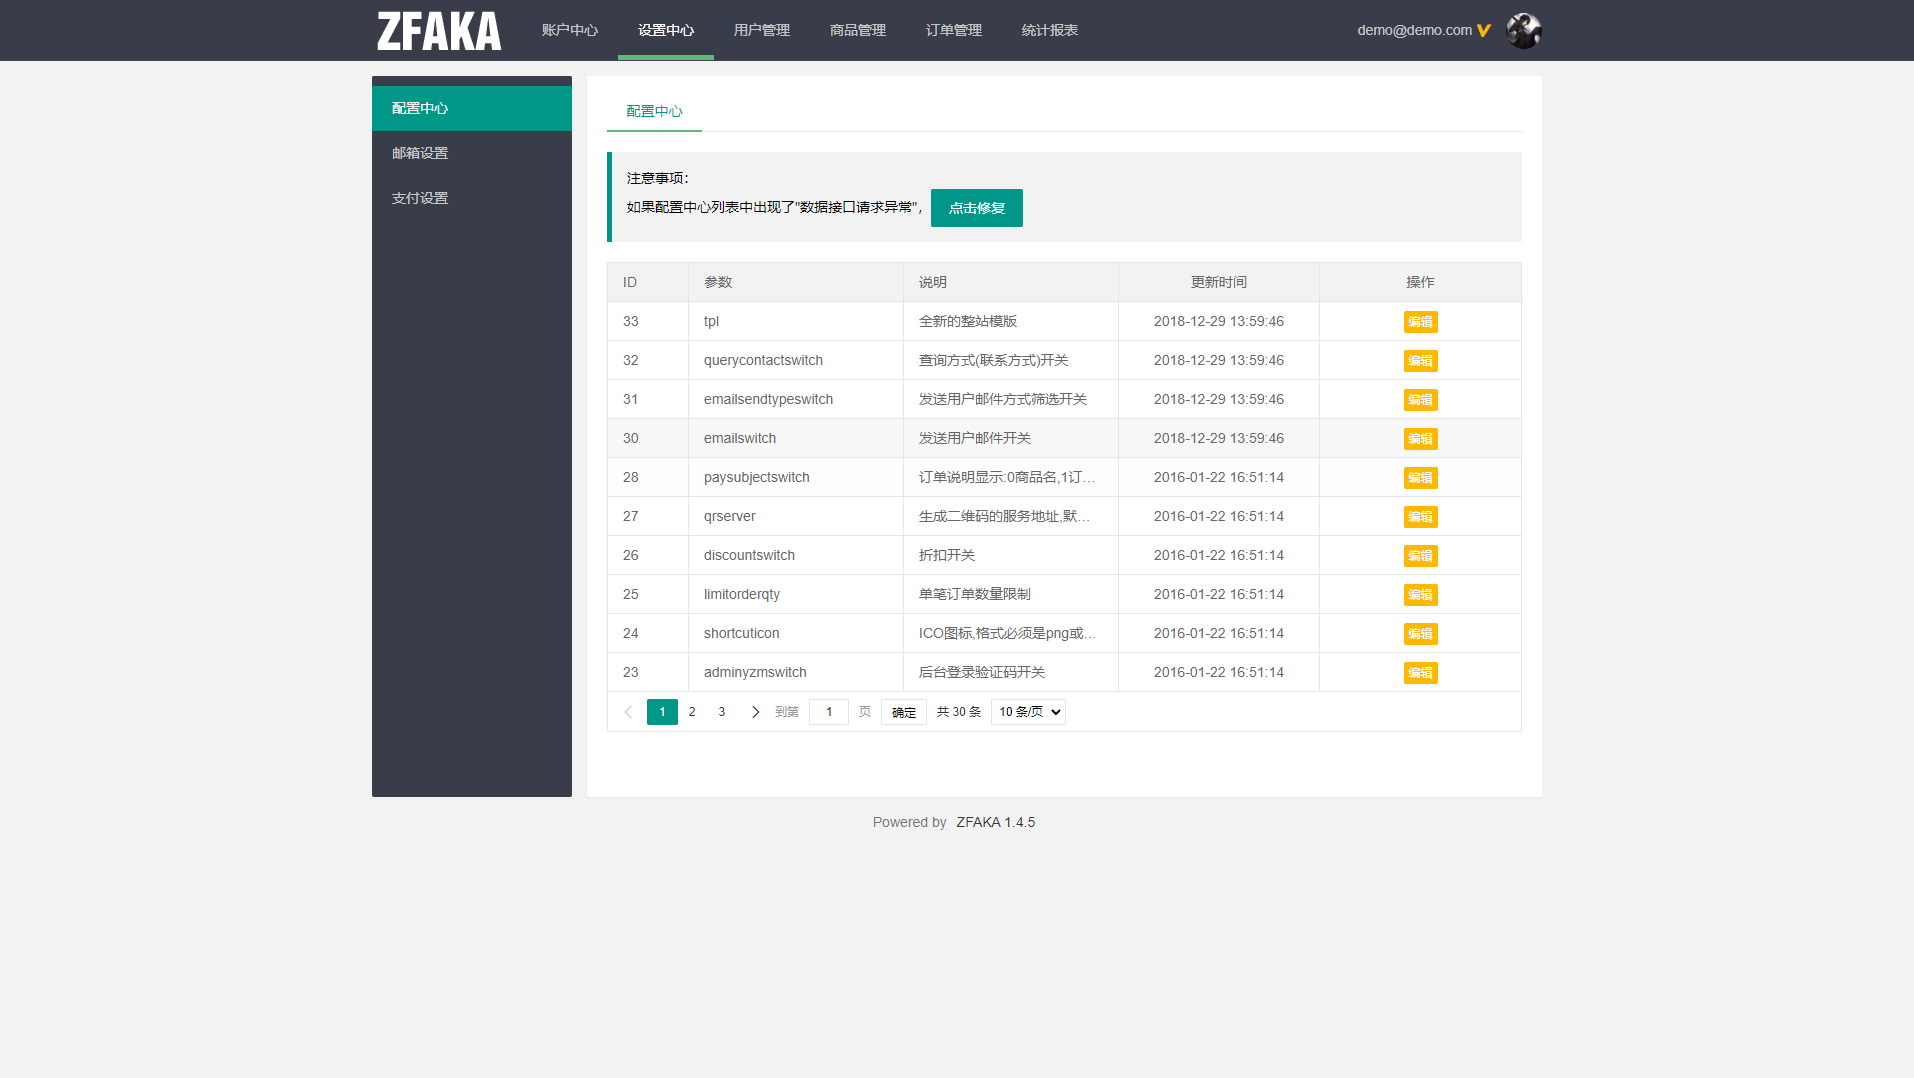 【亲测修复版】20211215最新ZFAKA高效的fk系统源码/完整运营版打包/修复支付接口/带视频搭建教程插图2